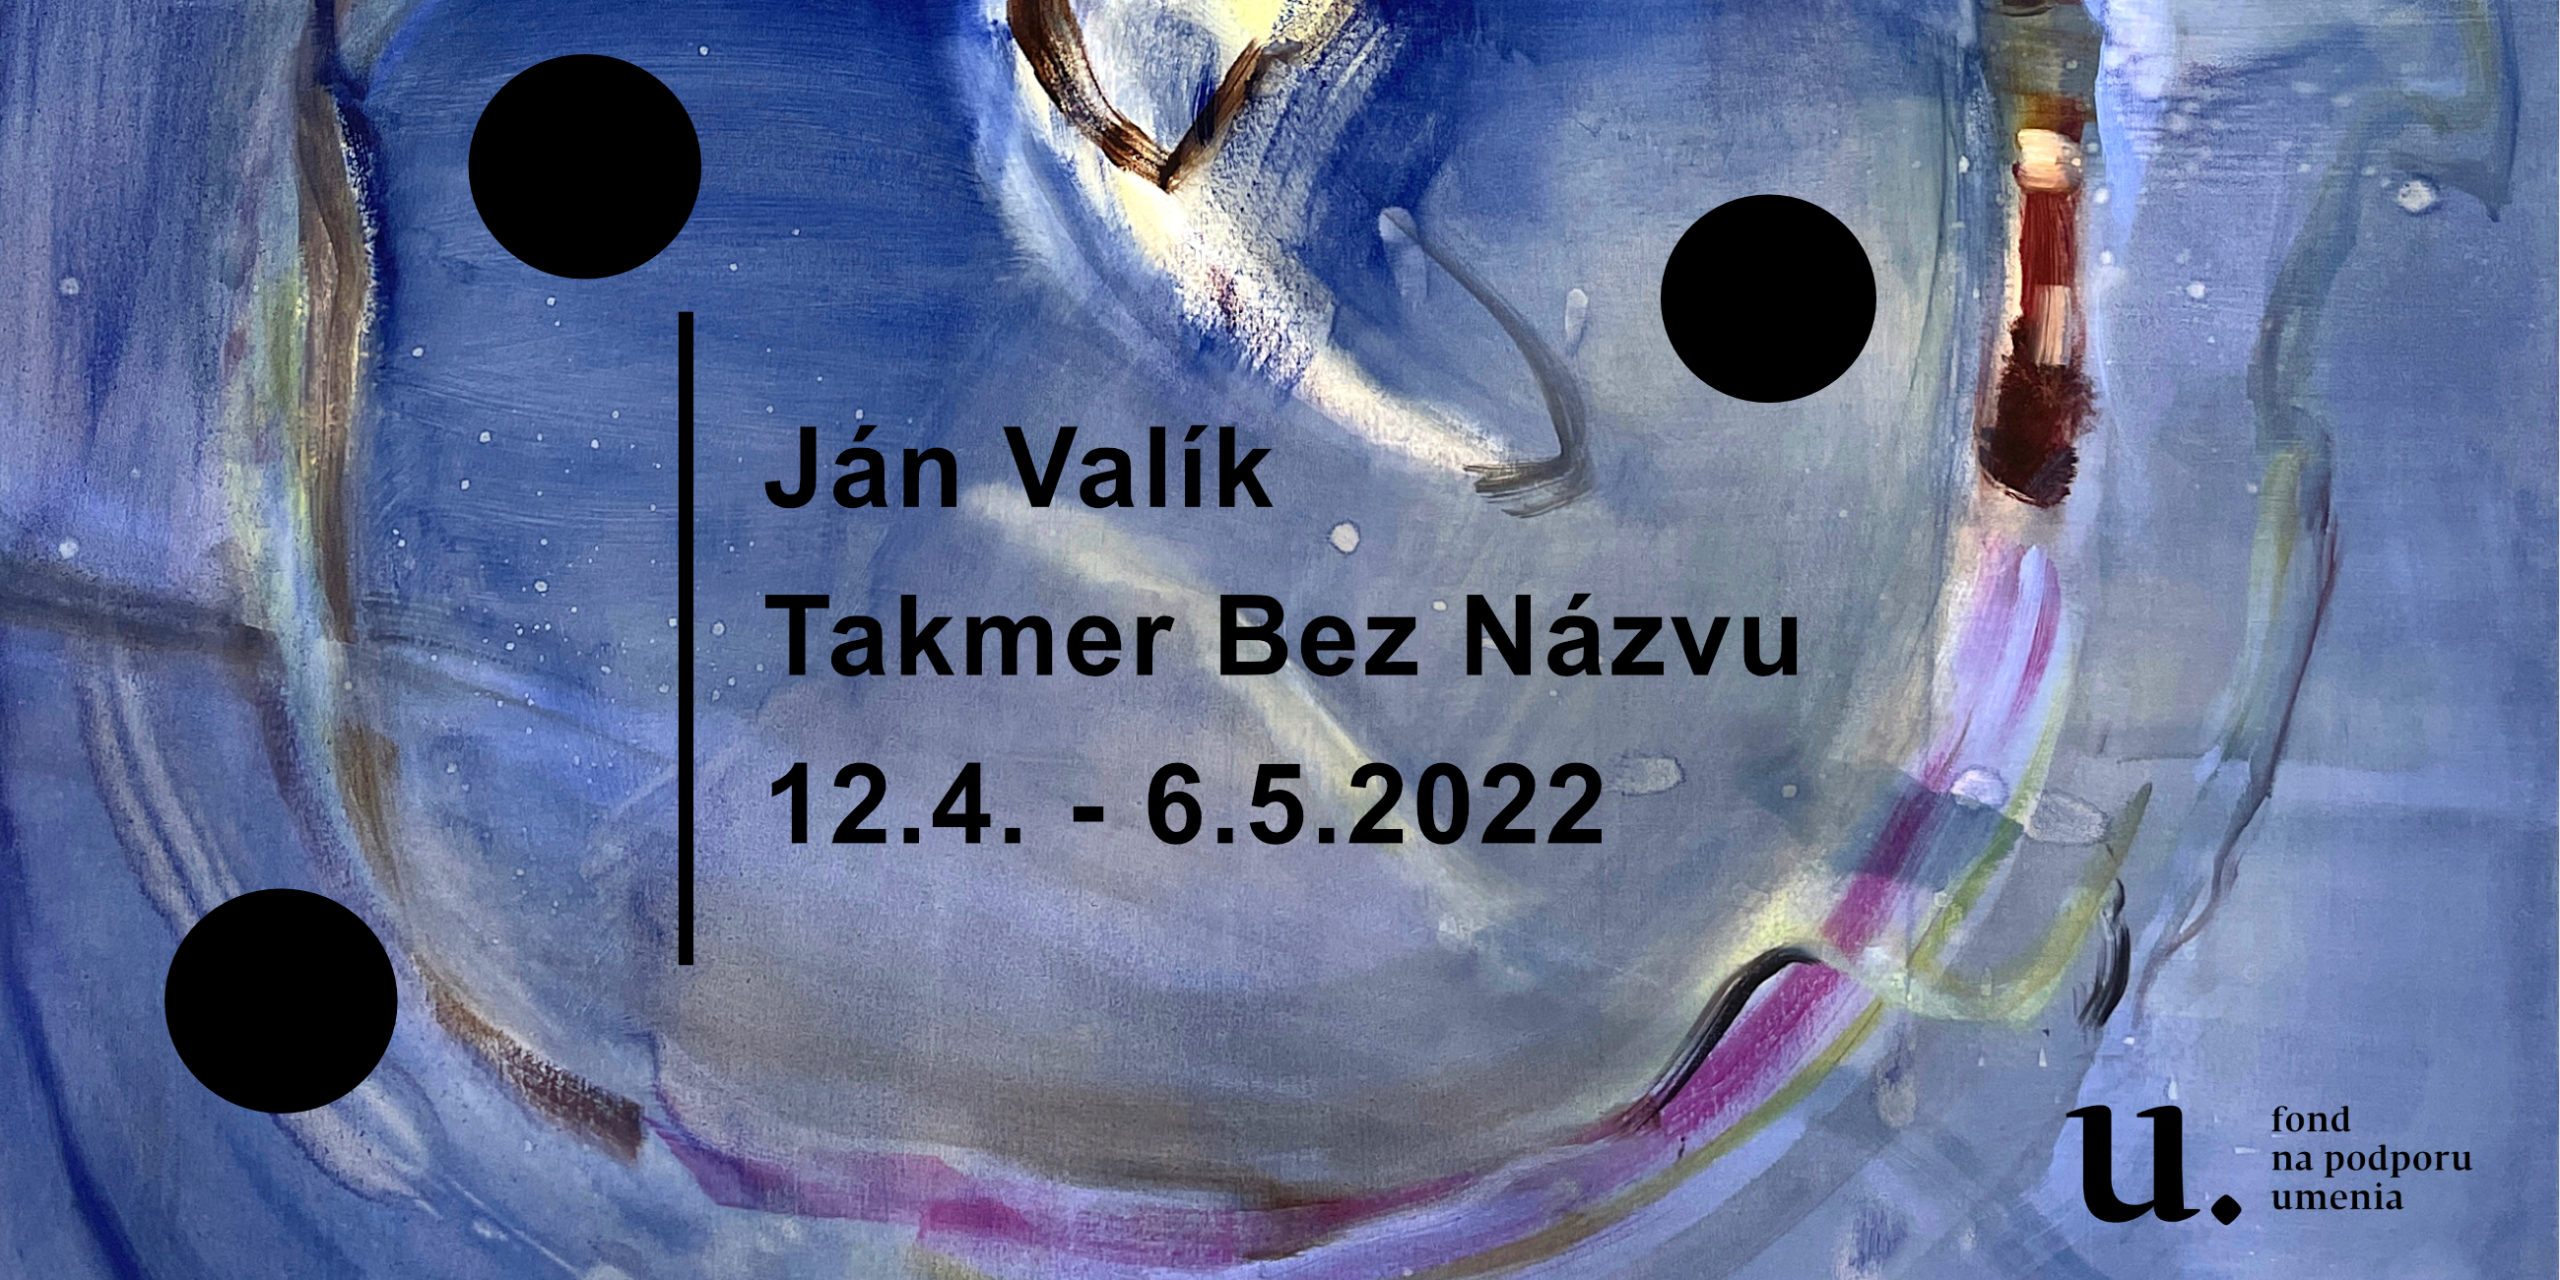 Ján Valík – Takmer Bez Názvu